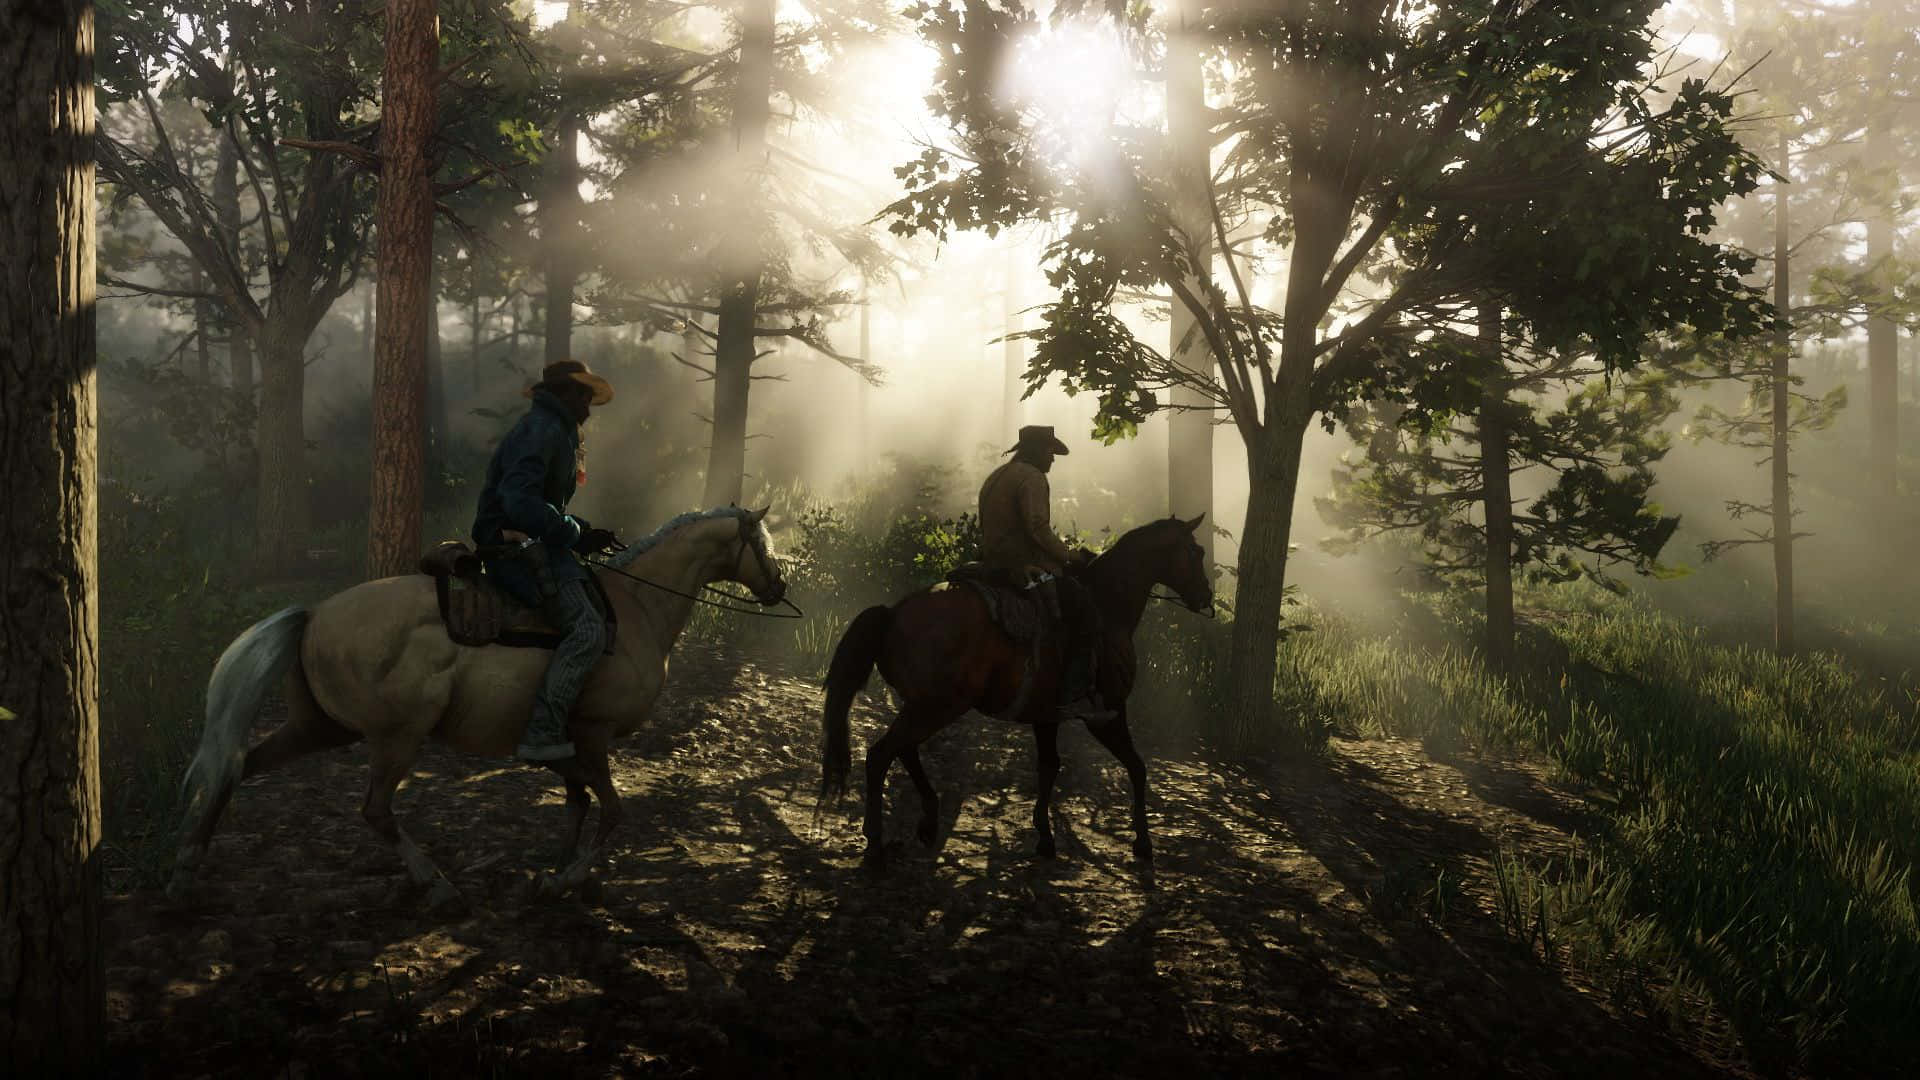 på Solnedgang: Rides gennem skoven ved solnedgang 4K Red Dead Redemption. Wallpaper